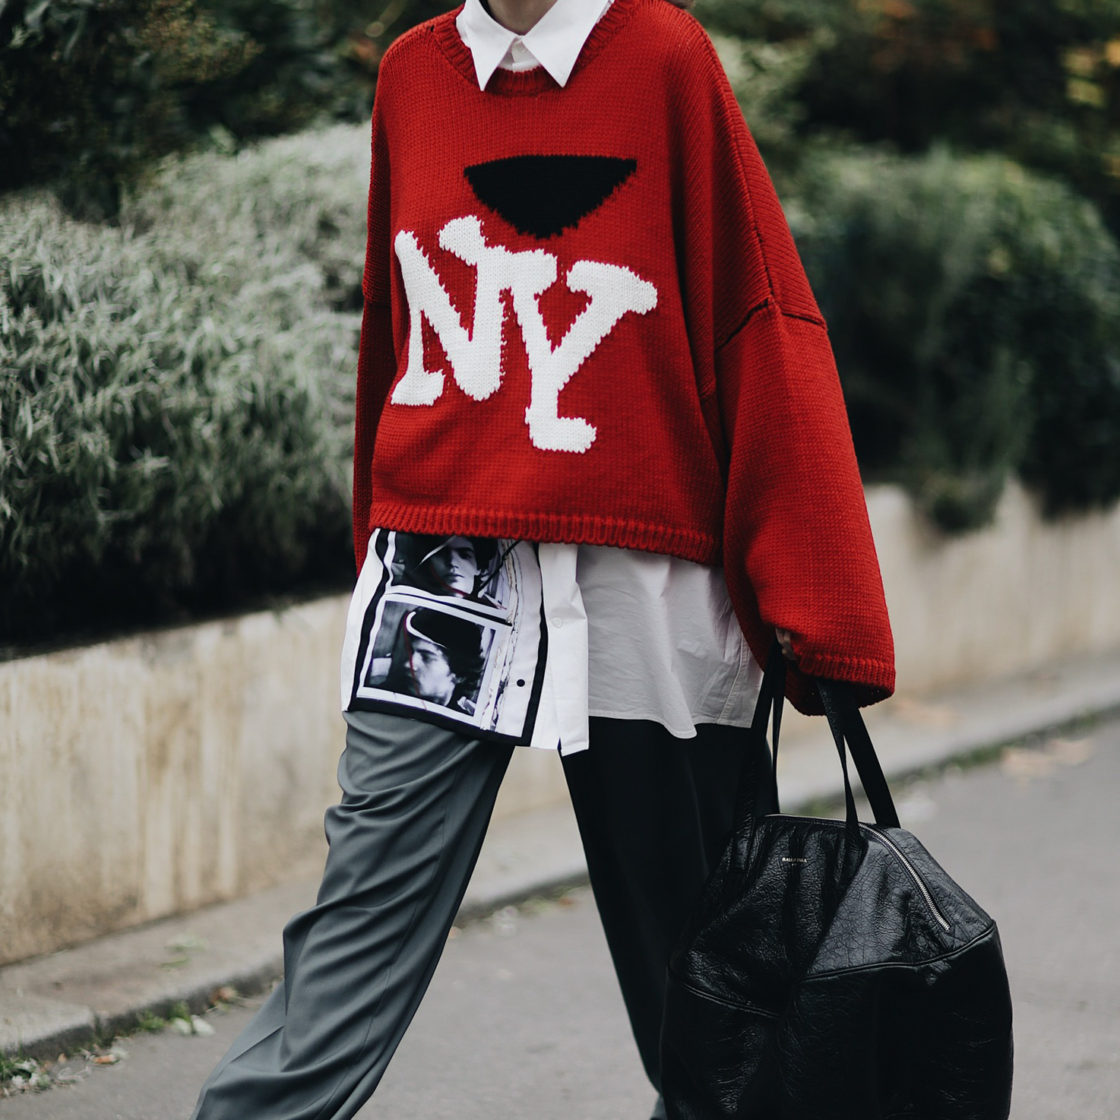 Street Style during Paris Fashion Week: Raf Simons